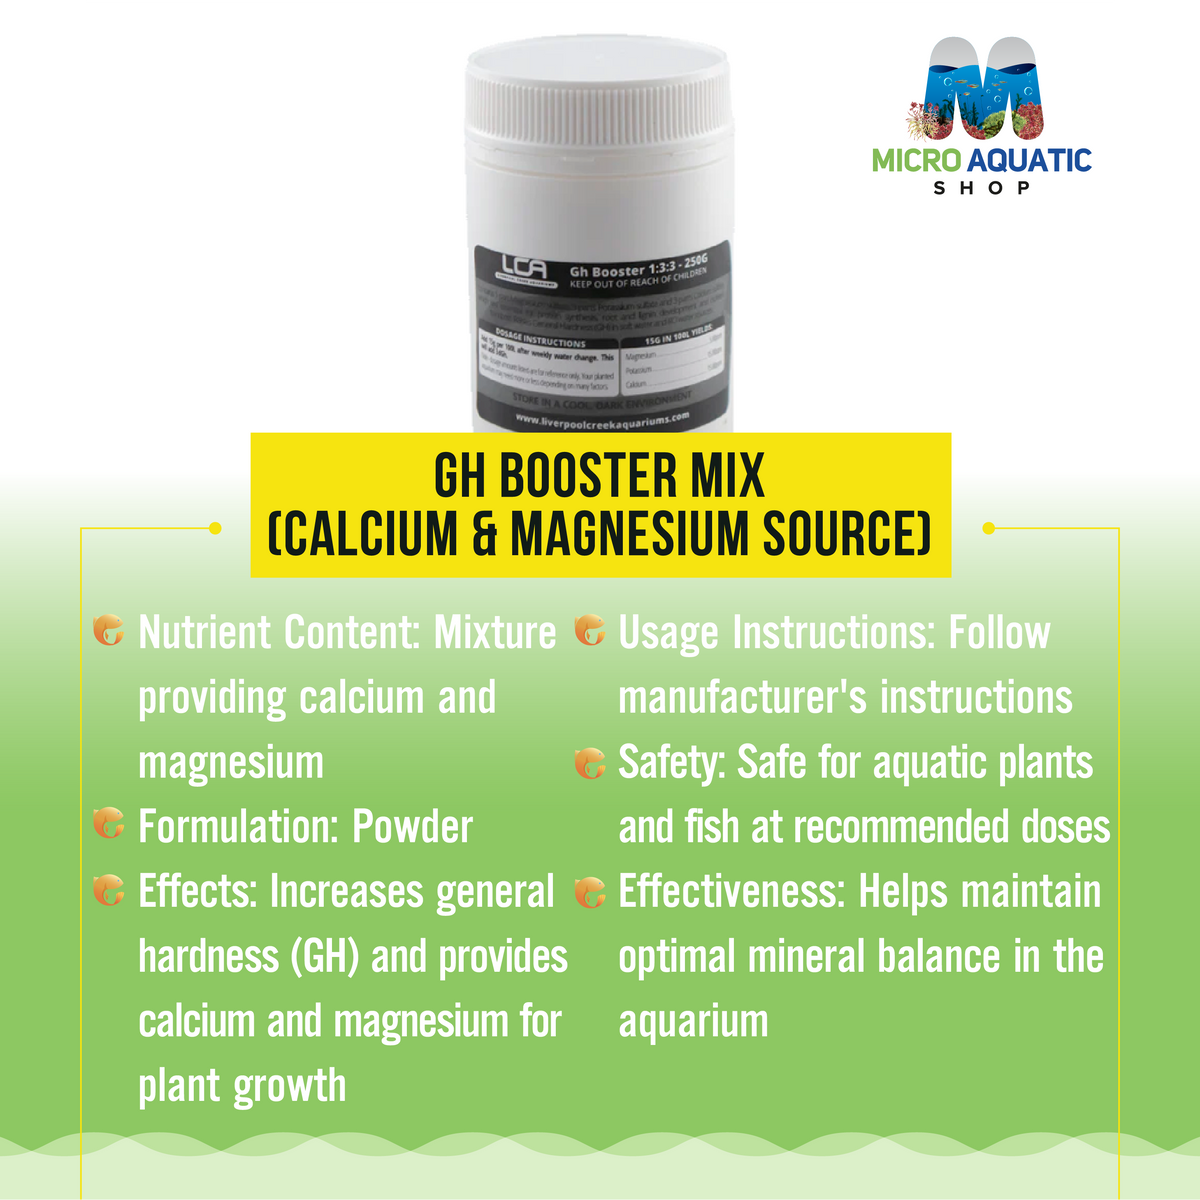 Gh Booster Mix (Calcium & Magnesium Source)